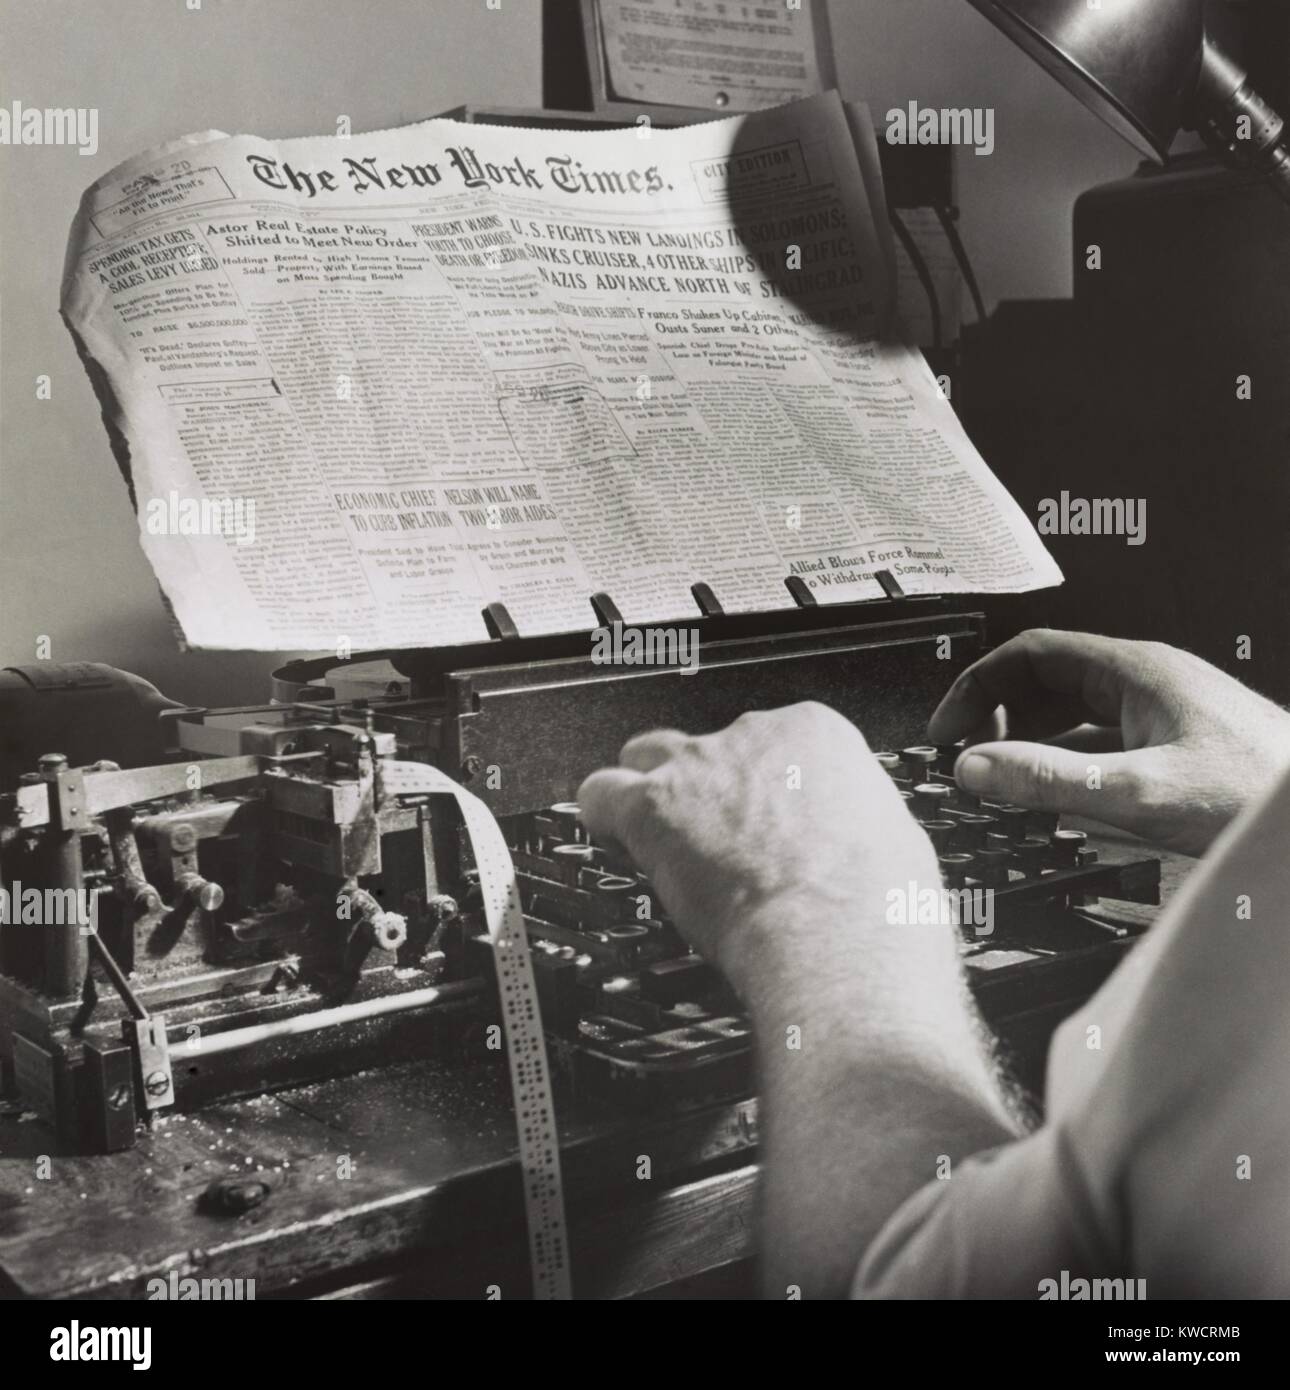 Radio Zimmer von der New York Times, Sept. 1942. Mal Krieg Nachrichten von Naval bestanden Censor wurde von Briefmarken auf Papier angegeben. Dann die News wurde zweimal täglich durch die Zeiten' eigenen Short Wave Radio Sender in internationaler Morse code gesendet. - (BSLOC 2015 1 187) Stockfoto